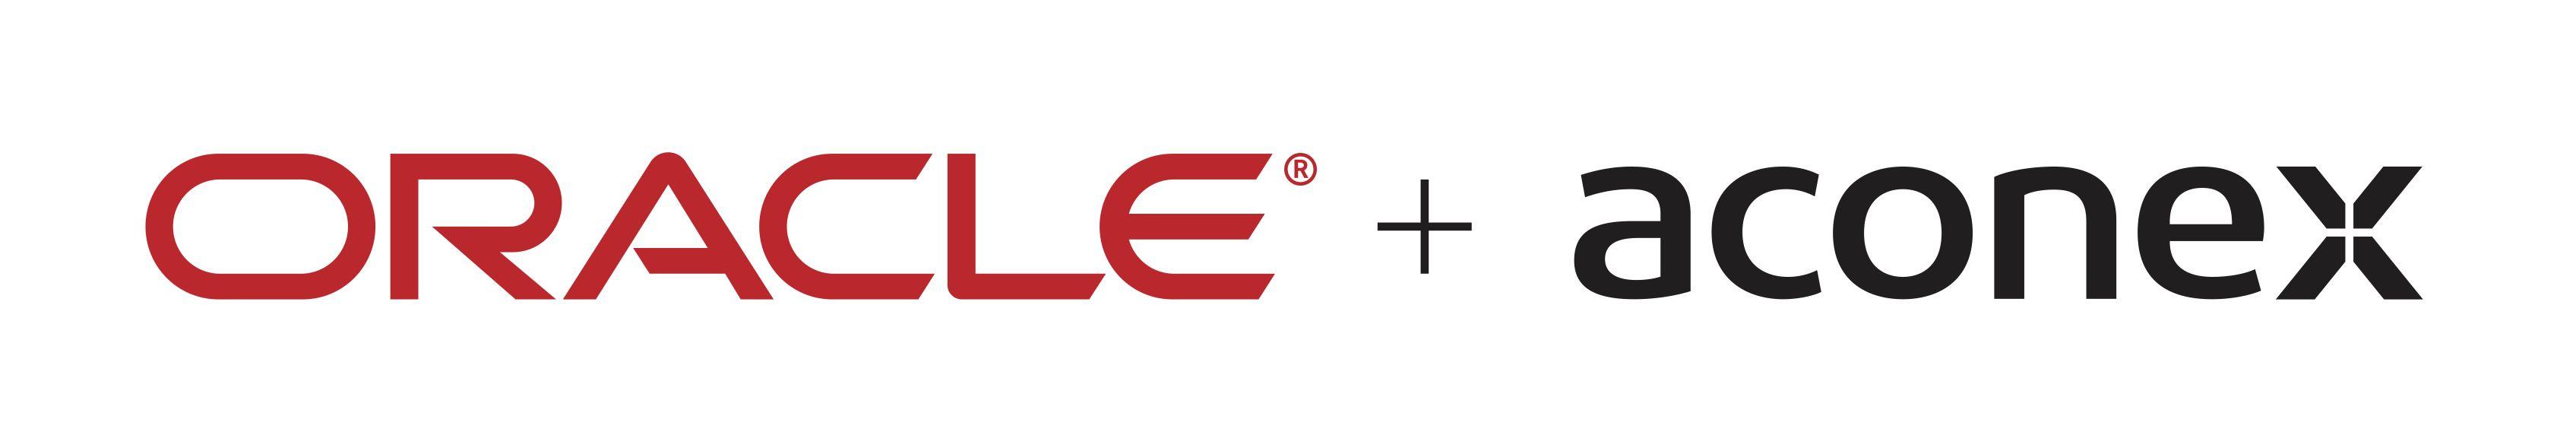 Aconex Logo - Oracle Aconex